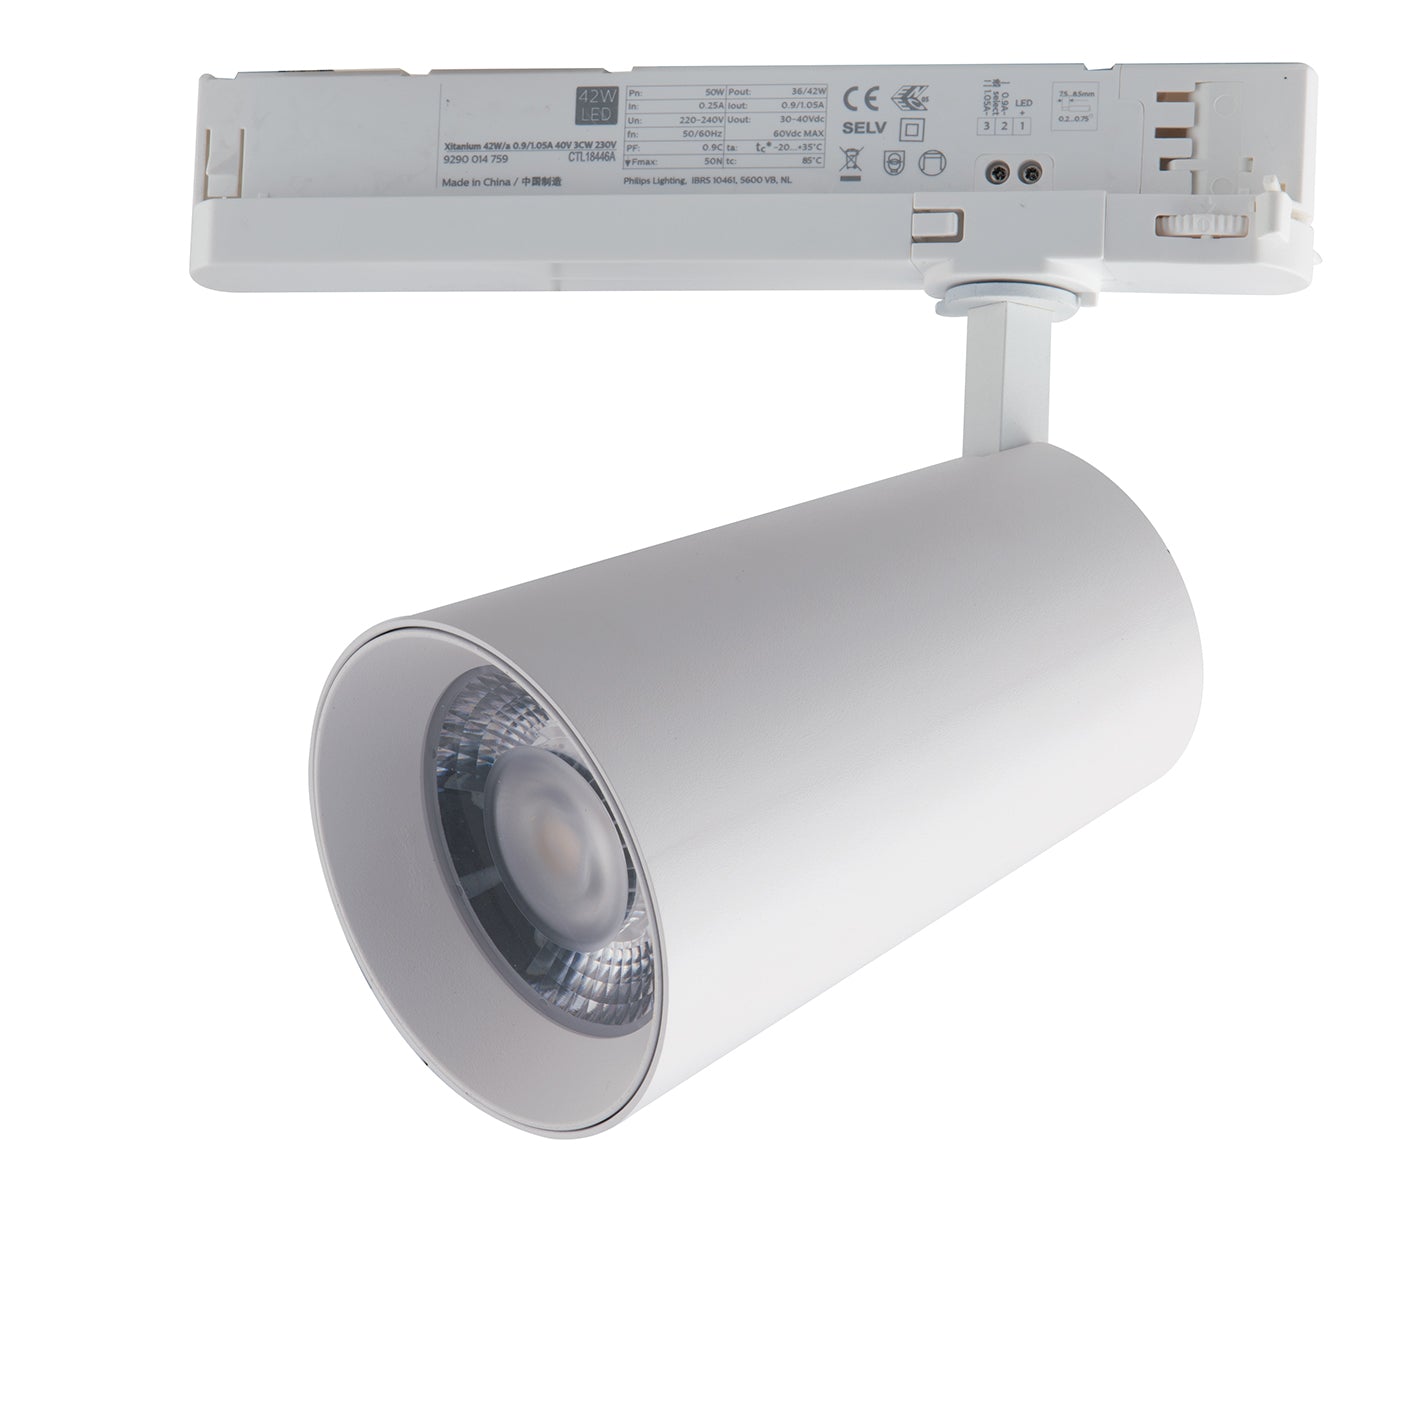 Phare LED KONE avec adaptateur triphasé 30W avec interrupteur CCT pour changement de température de couleur